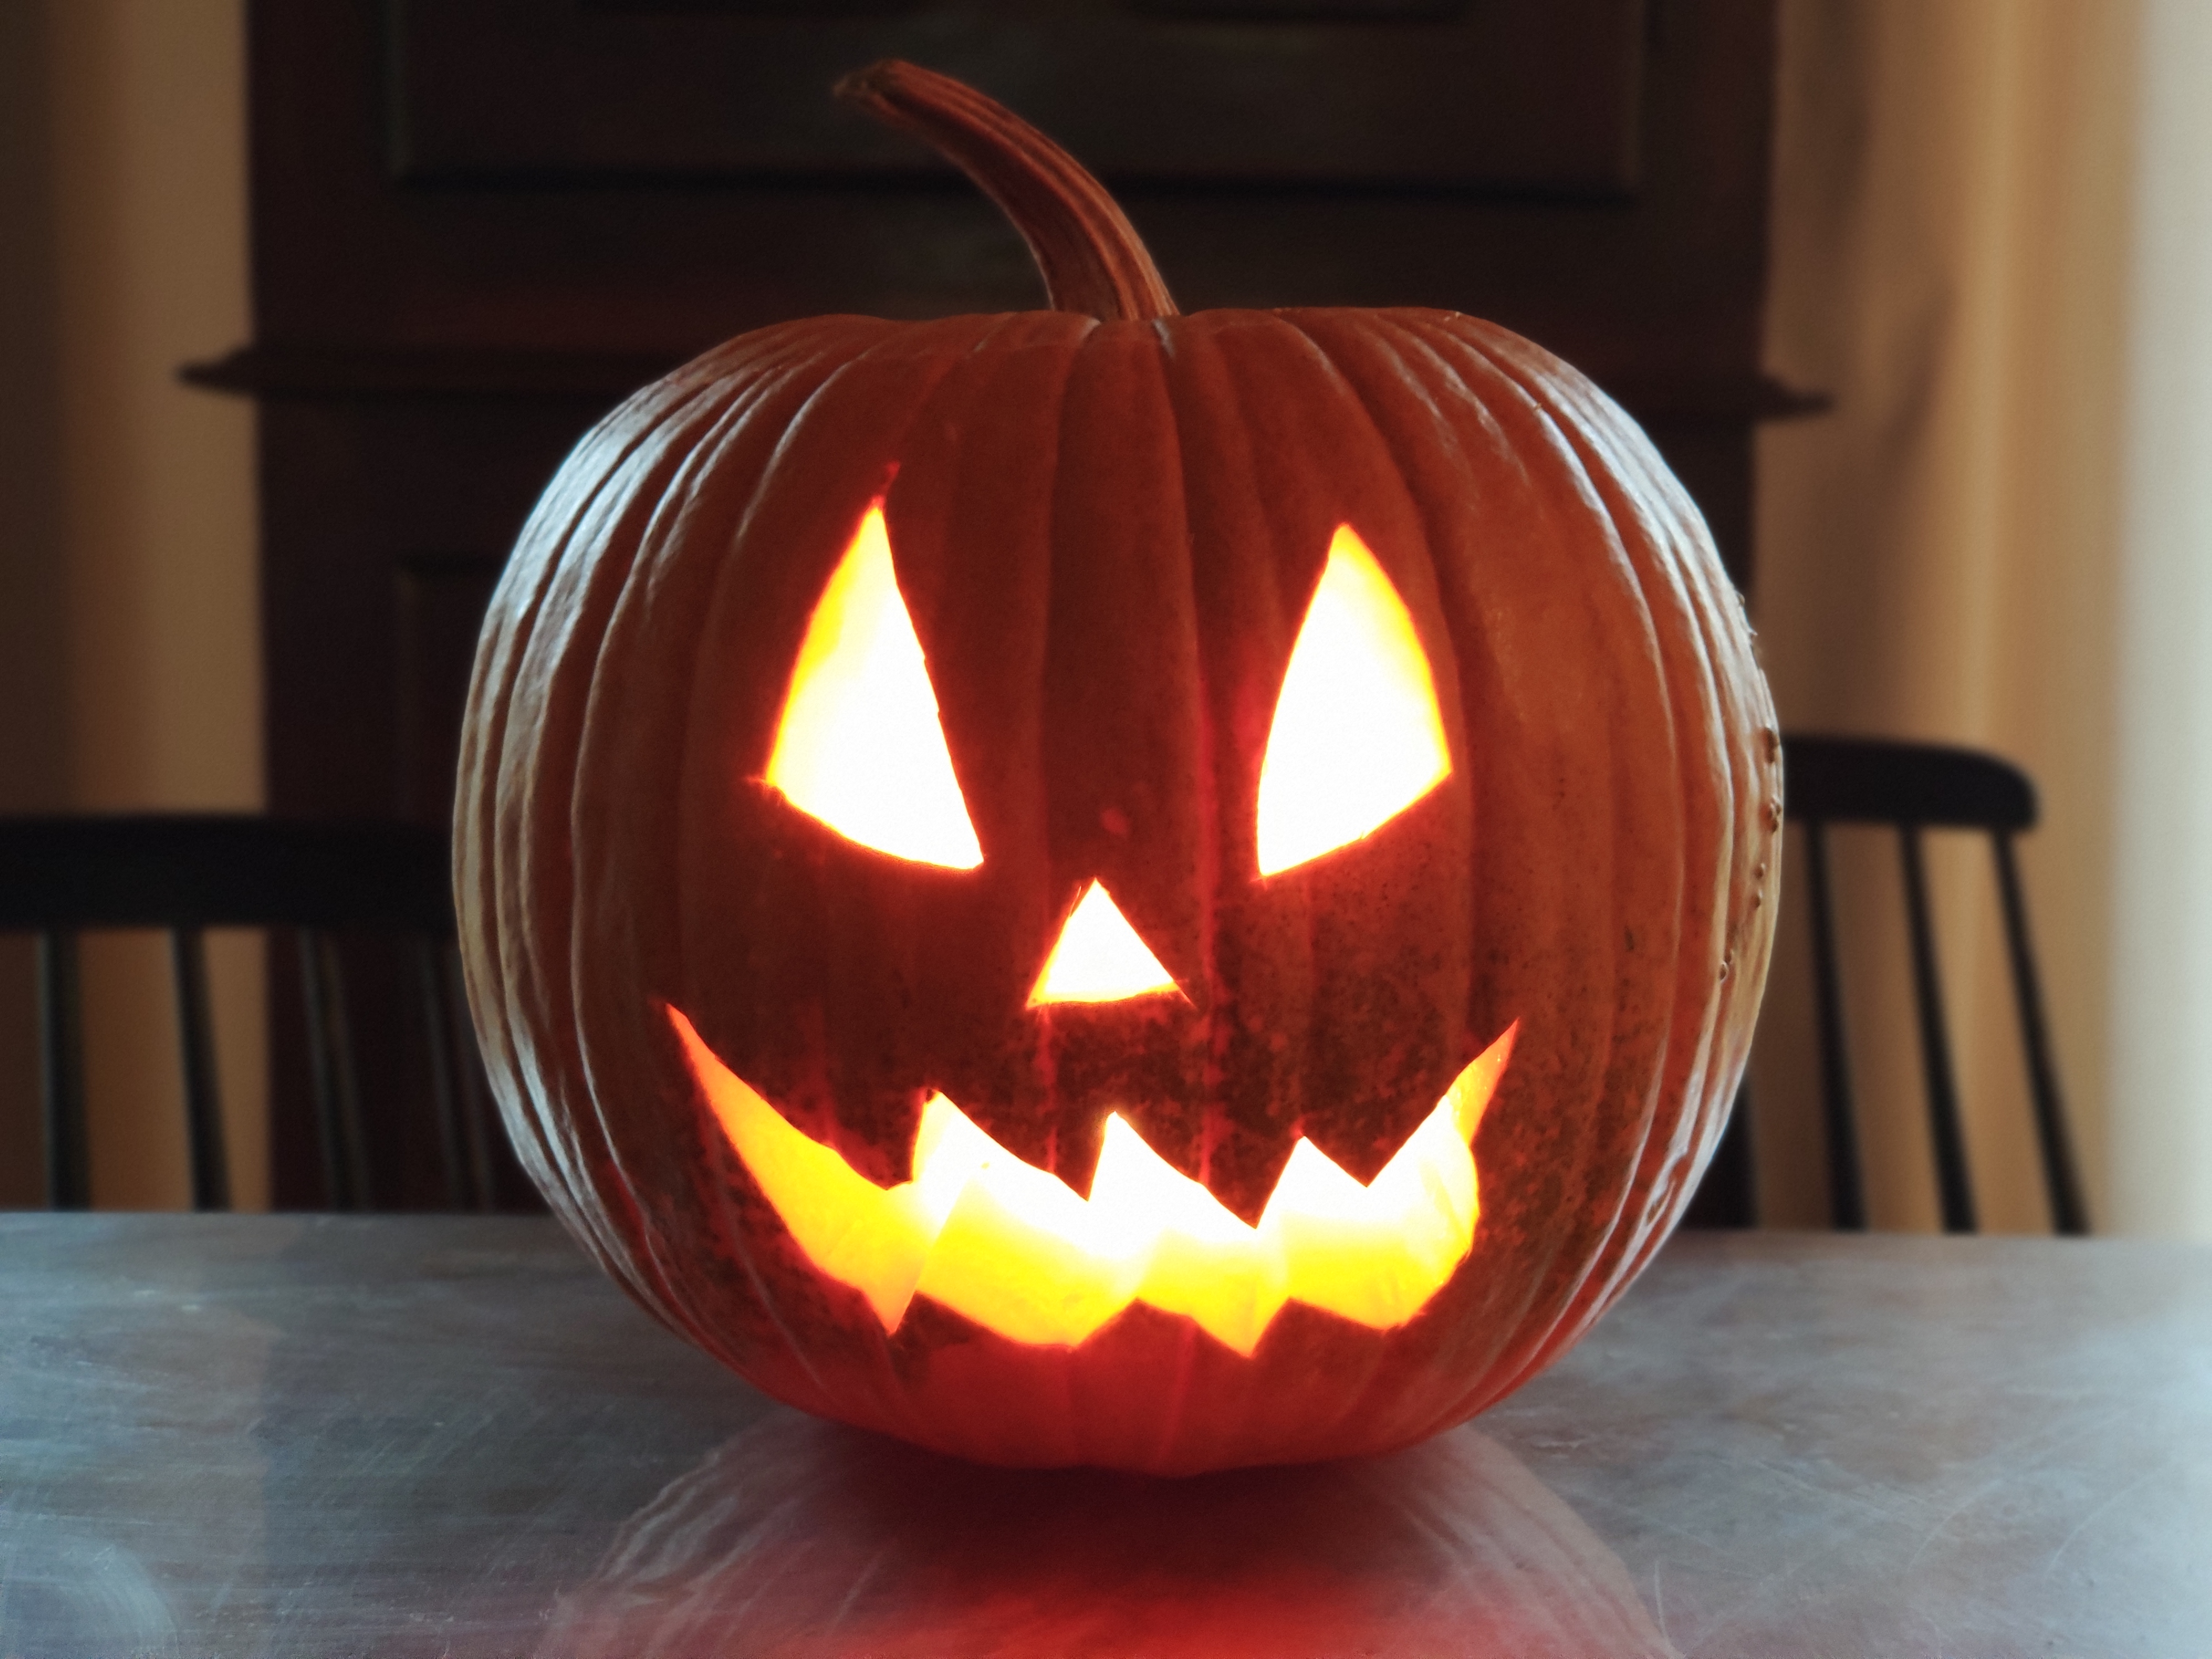     Halloween : une fête religieuse devenue commerciale

